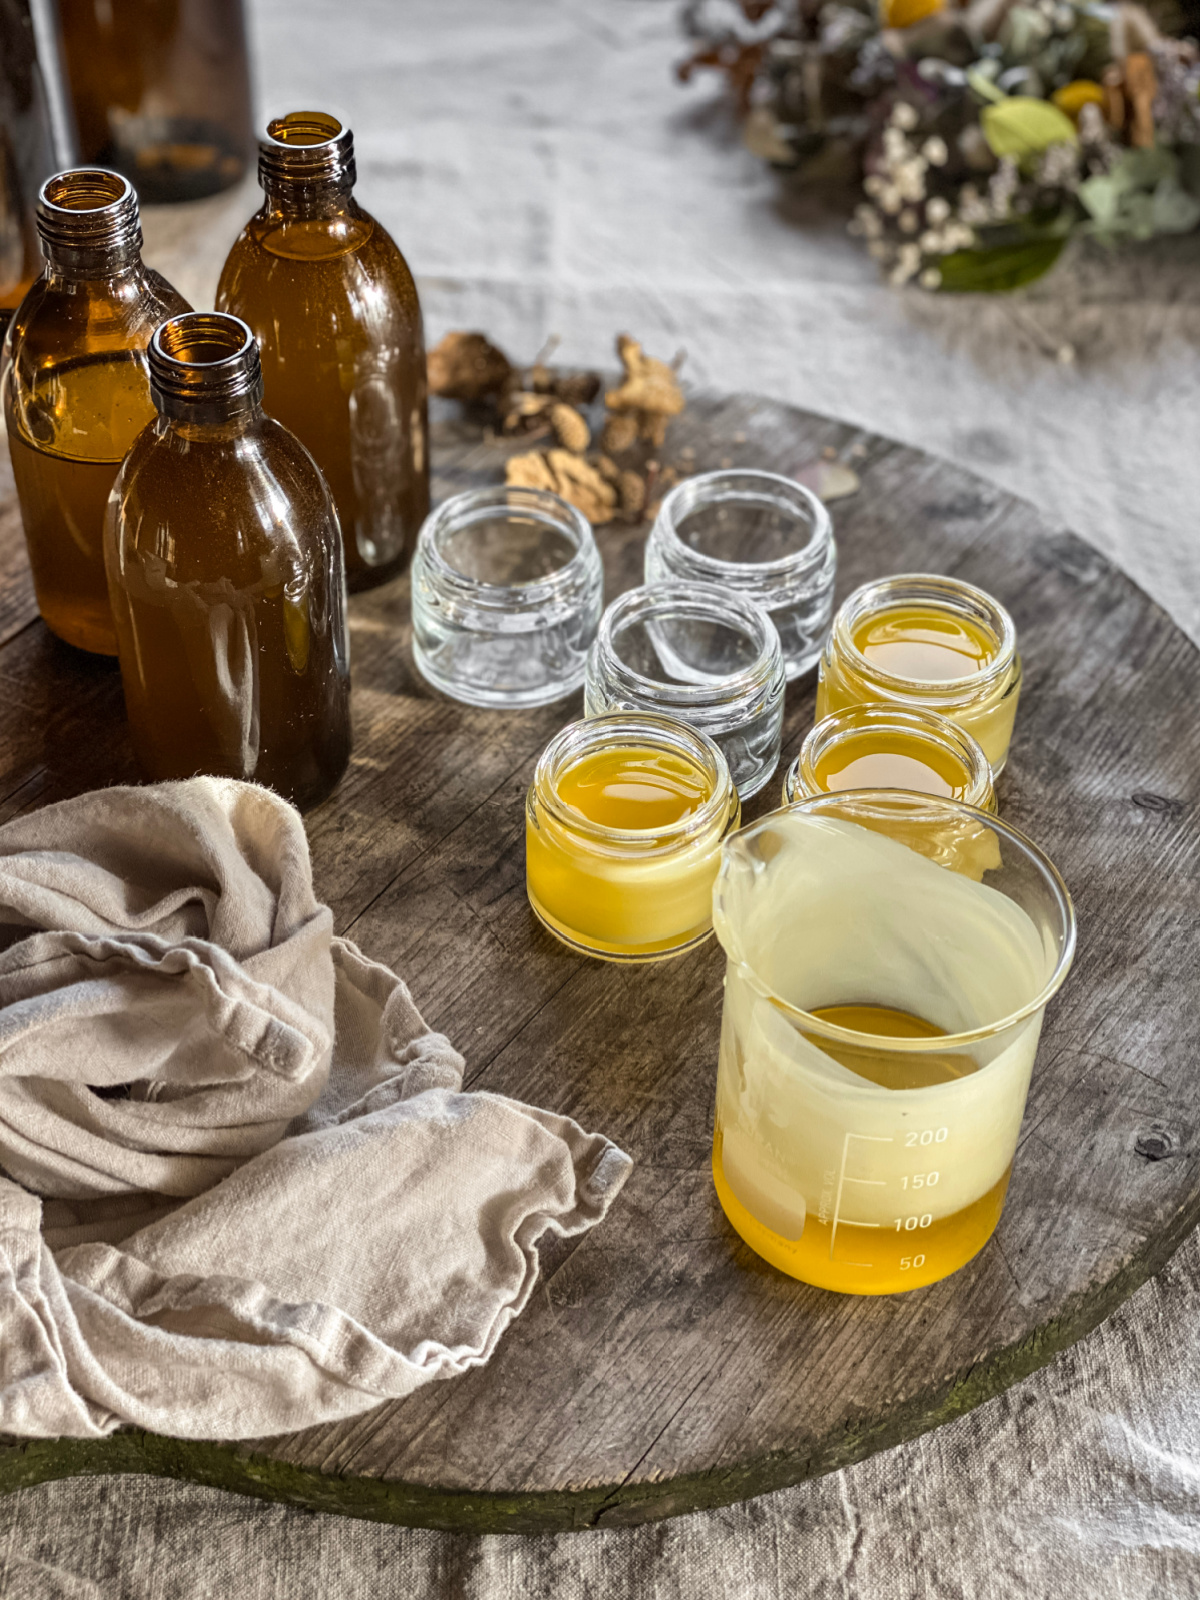 herbal remedies in bottles and jars